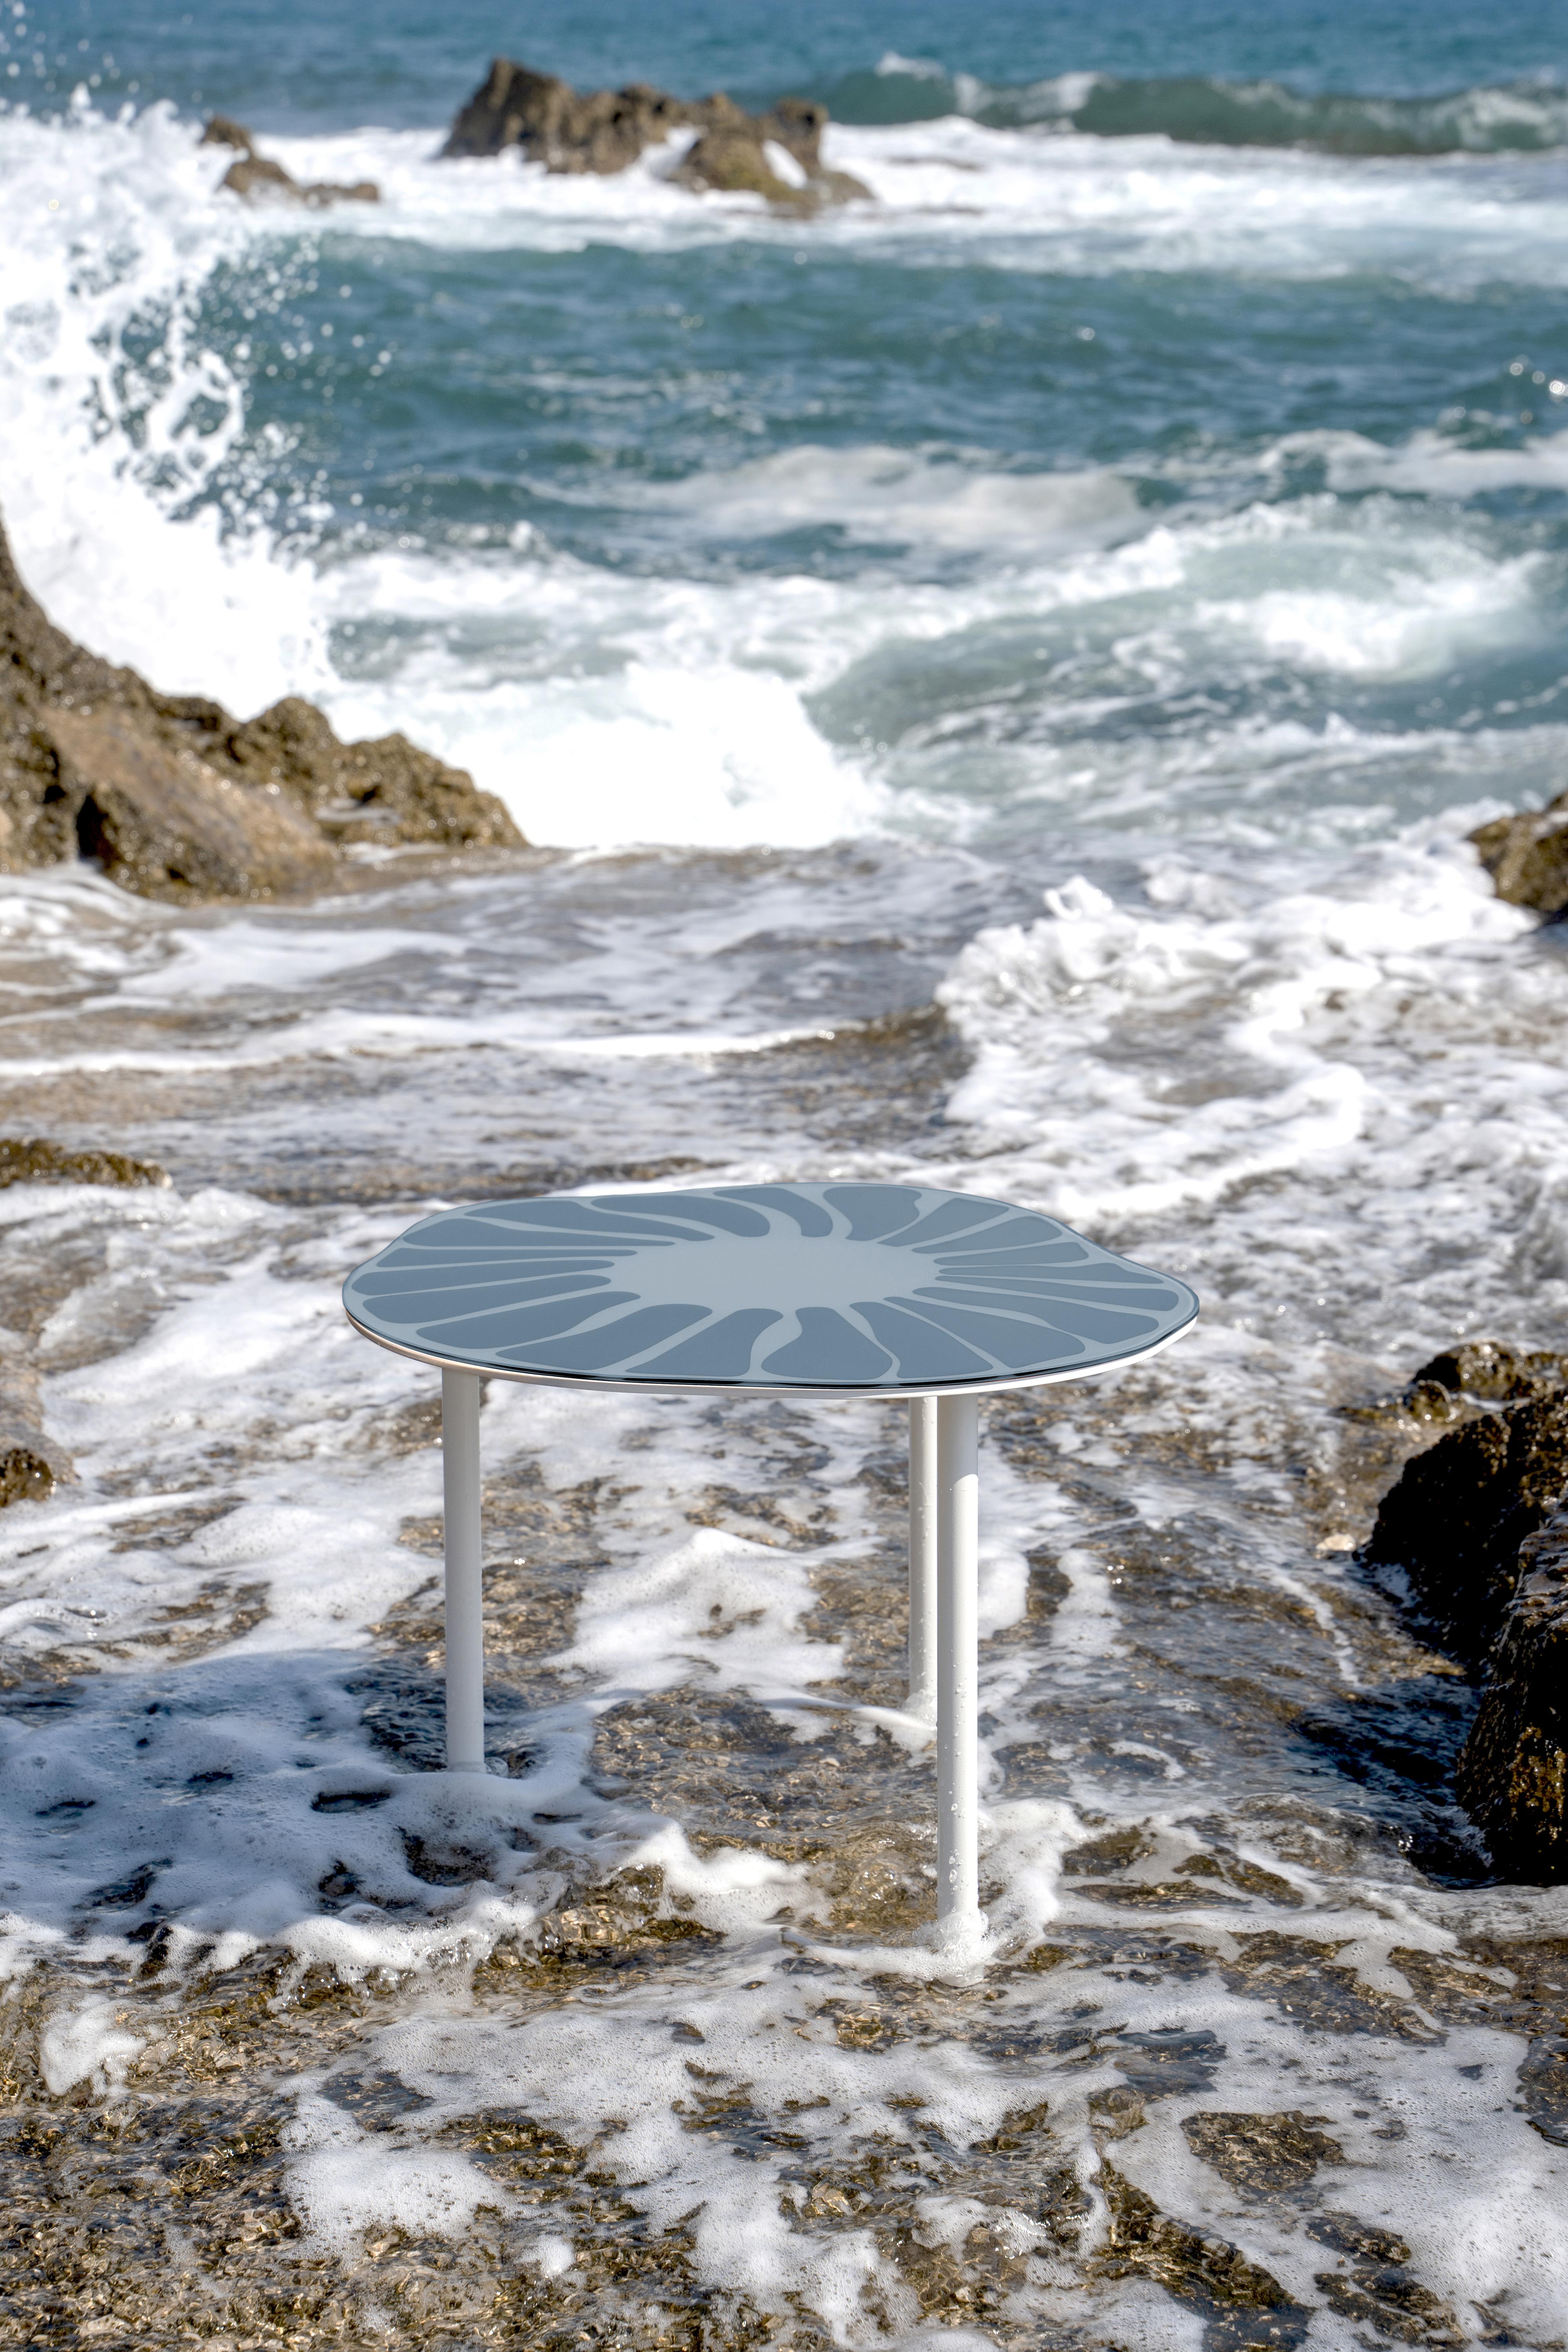 Cesareo est une table basse réalisée avec des surfaces spéculaires, sélectionnées avec précision, et du métal laqué avec une finition opaque.
Le produit est caractérisé par des lignes morbides et ondulées qui rappellent le monde naturel.
La Forma